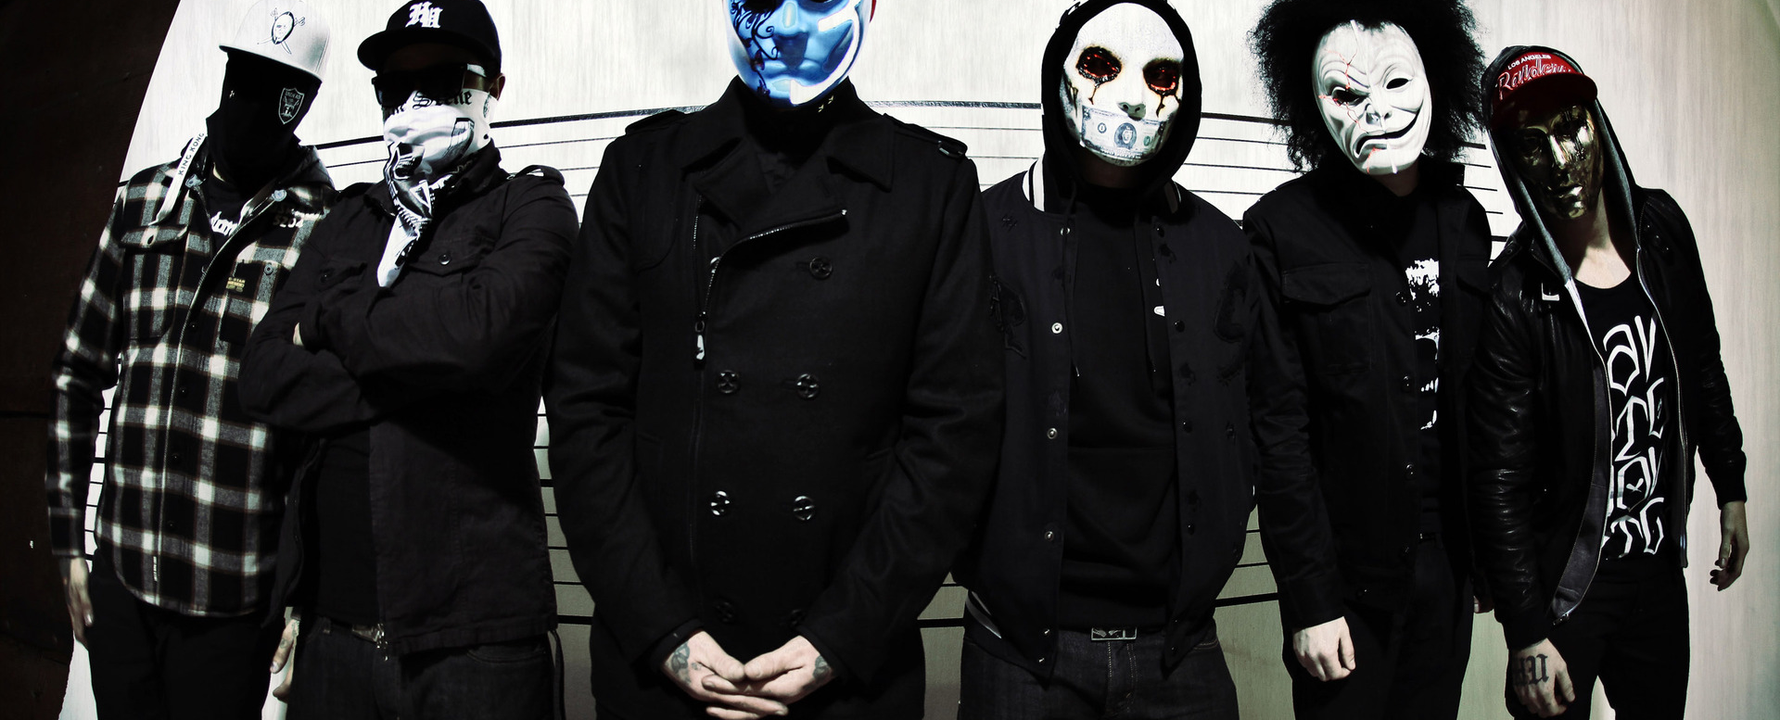 Fotografía promocional de Hollywood Undead